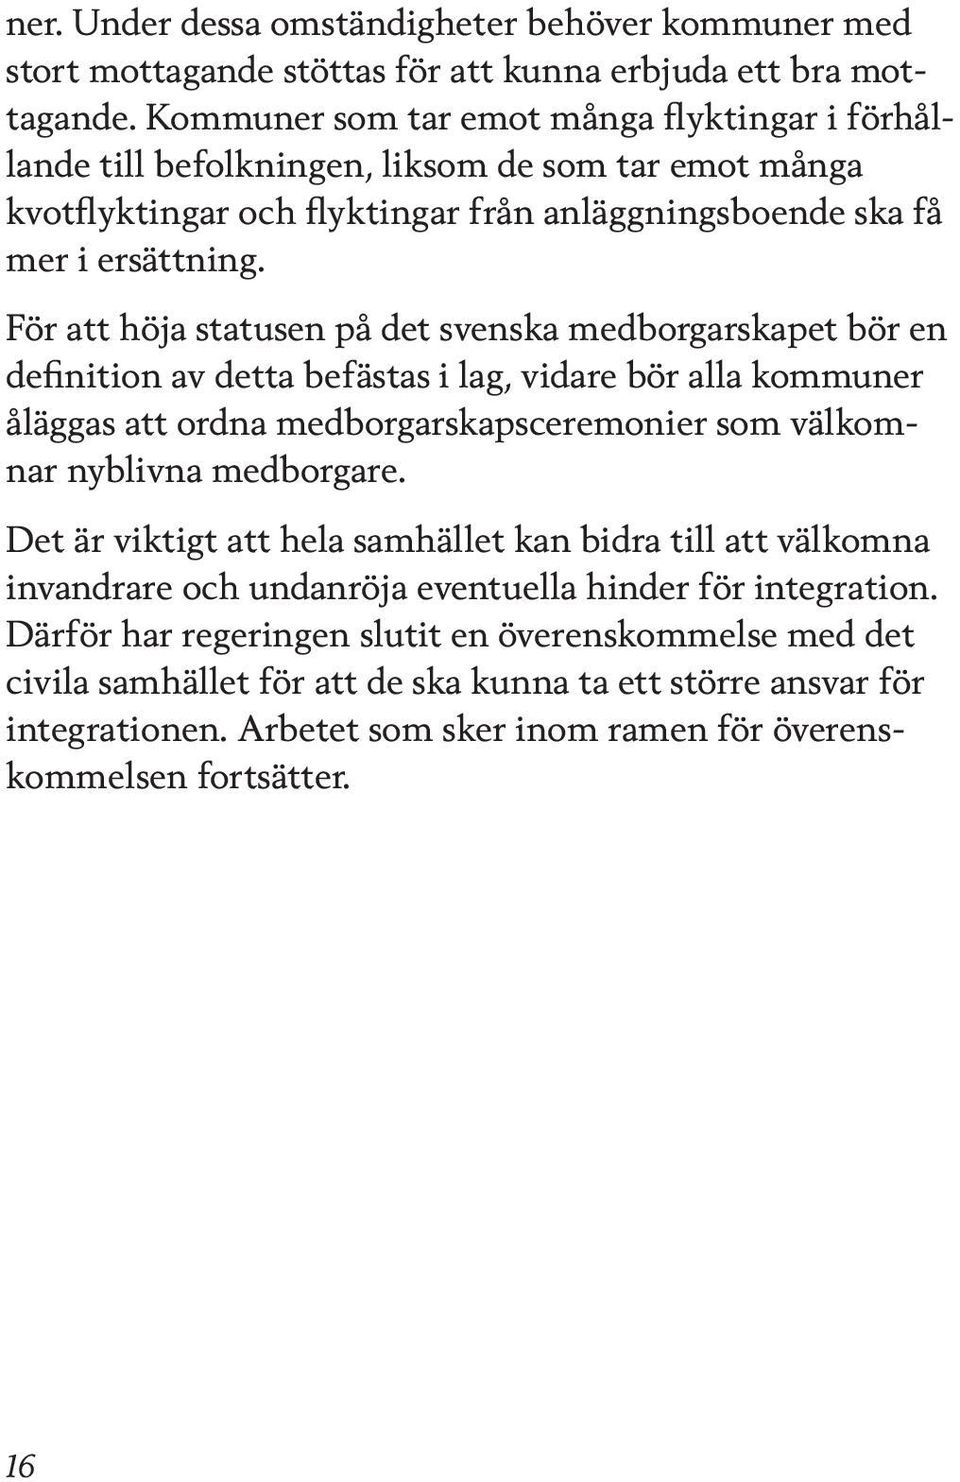 För att höja statusen på det svenska medborgarskapet bör en definition av detta befästas i lag, vidare bör alla kommuner åläggas att ordna medborgarskapsceremonier som välkomnar nyblivna medborgare.